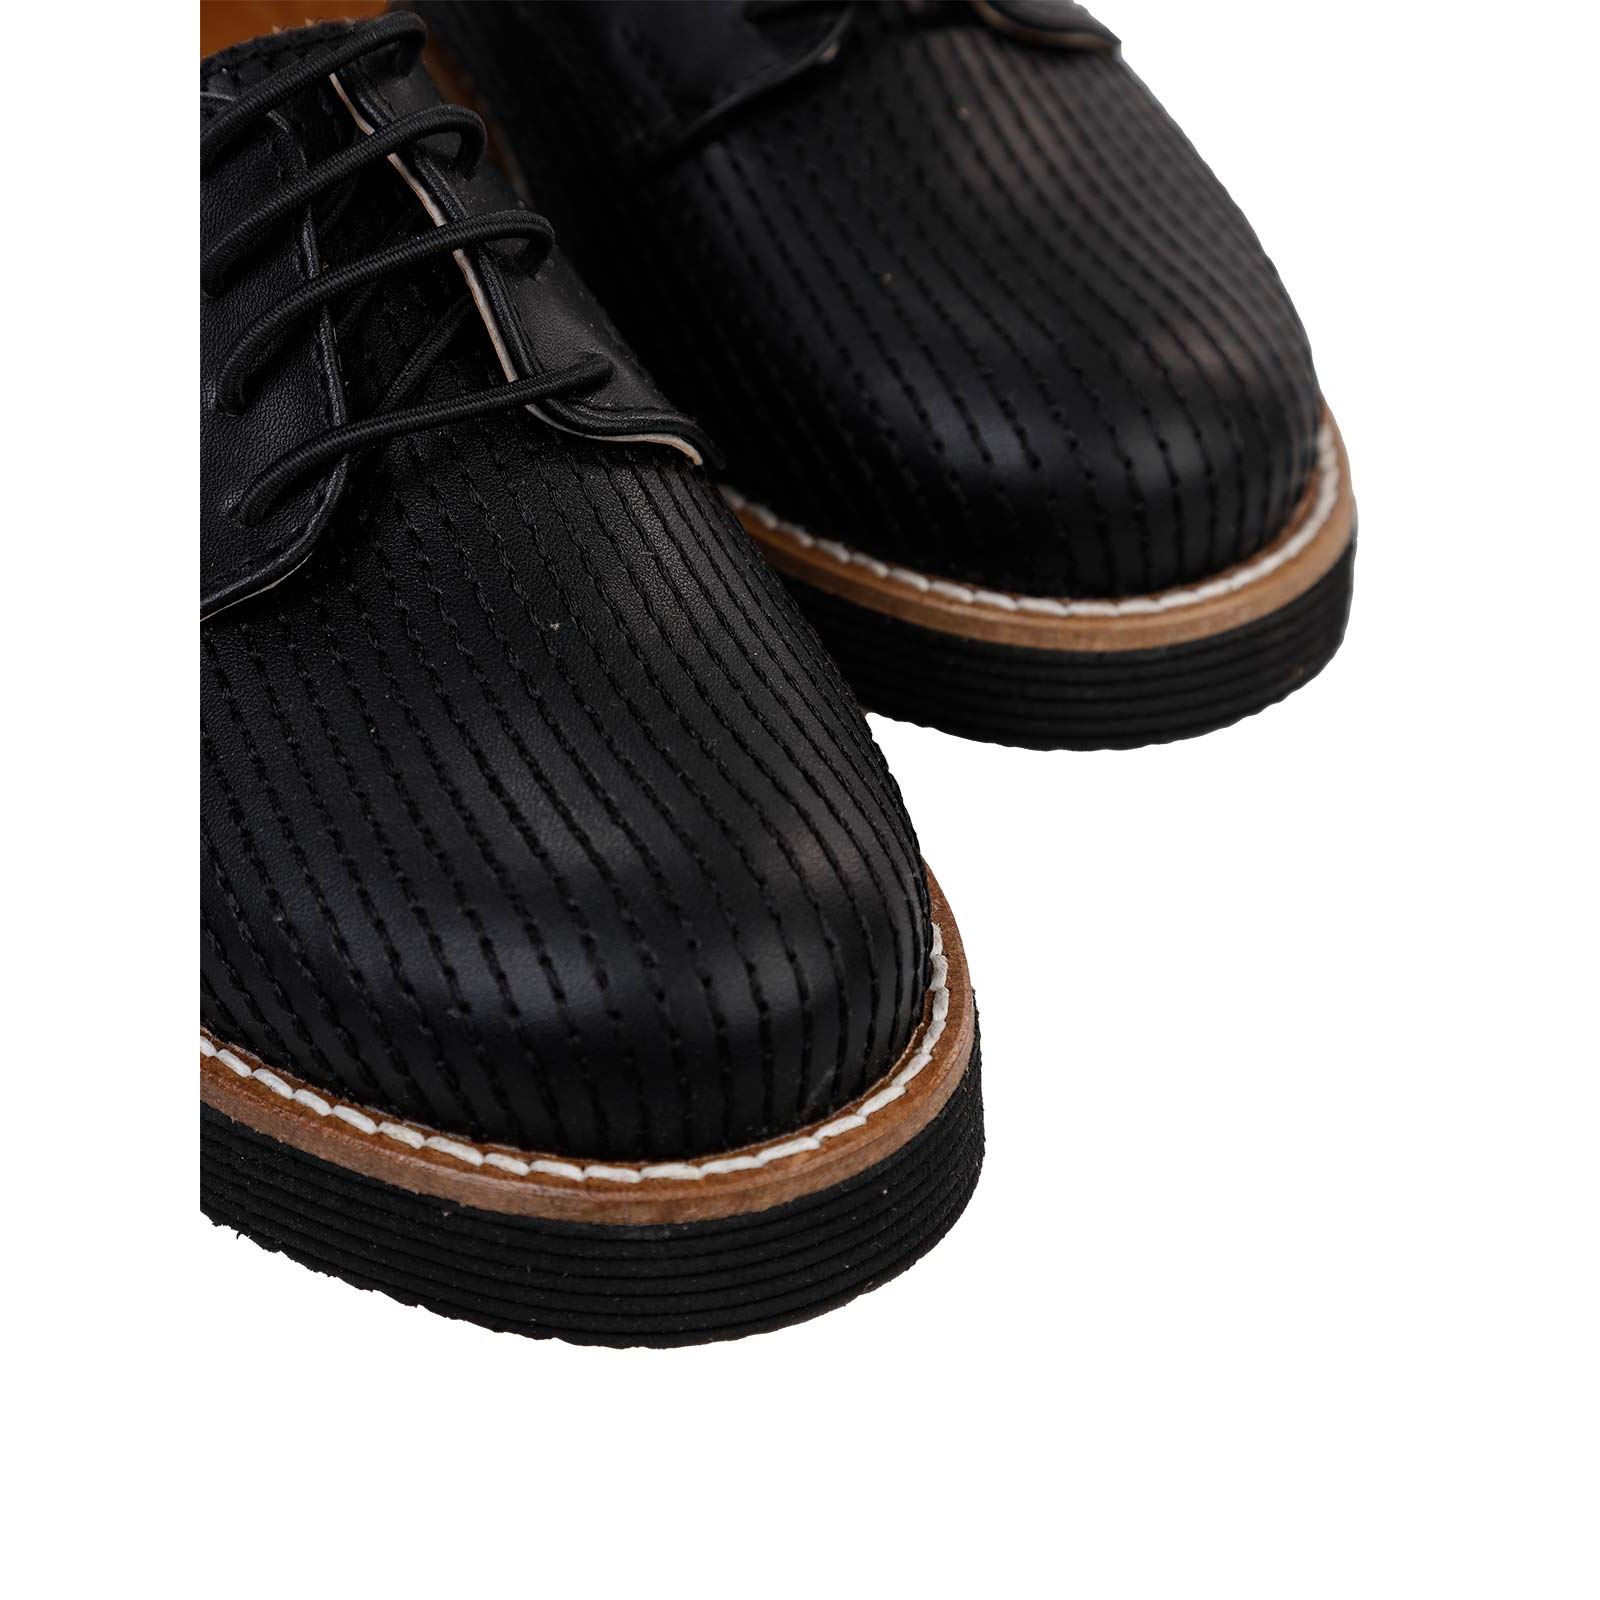 Civil Class Erkek Çocuk Klasik Ayakkabı 31-35 Numara Siyah